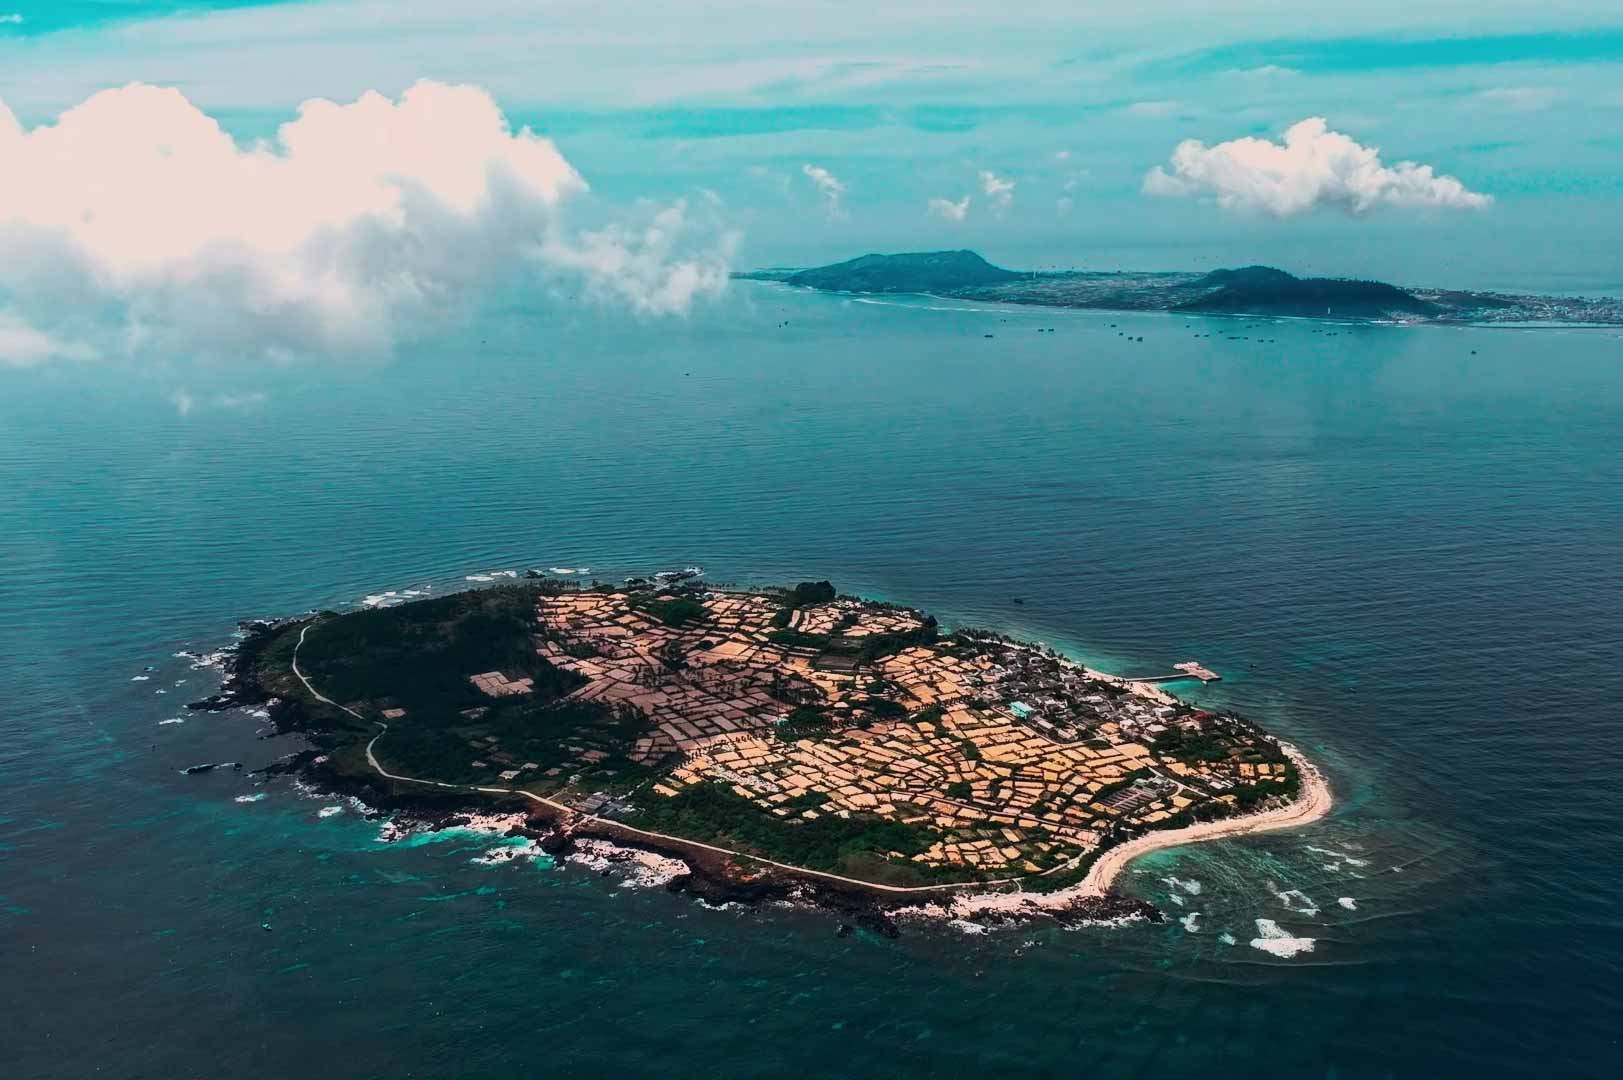 Toàn huyện Lý Sơn có 02 đảo: Đảo Lớn (còn gọi là Cù Lao Ré) và Đảo Bé (Cù Lao Bờ Bãi). Với điều kiện tự nhiên tuyệt vời, cung đường bơi vượt biển (từ Đảo Lớn sang Đảo Bé) đã được ra đời.